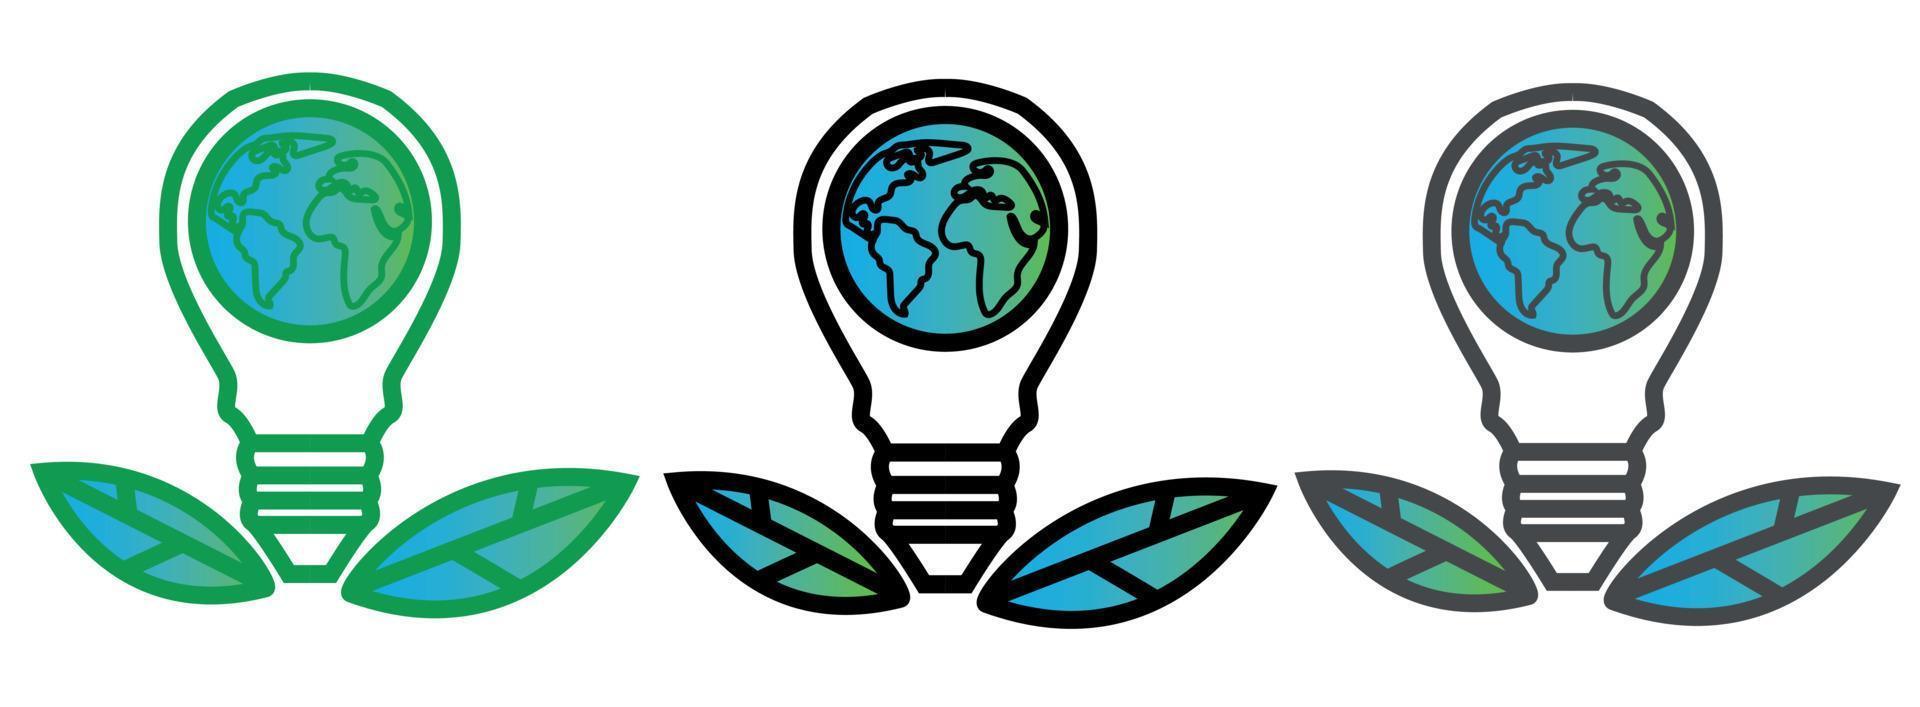 plugue elétrico verde eco com vetor de ícone de folhas economizar energia com o conceito de ecologia de plugue elétrico para design gráfico, logotipo, site.